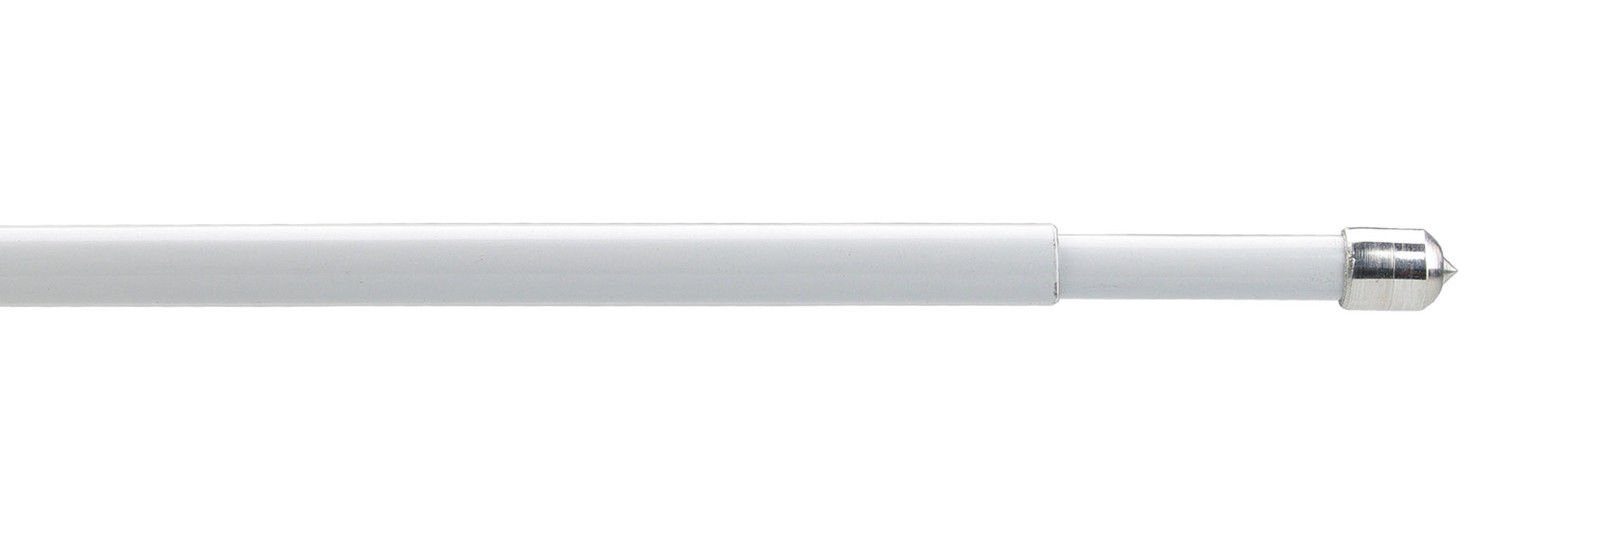 Klemmstange Klemmstange - Farbe: Gardinenstange einseitig rewagi, Verkaufseinheit: weiß, 2 Exclusiv Stück geklemmt, Standart